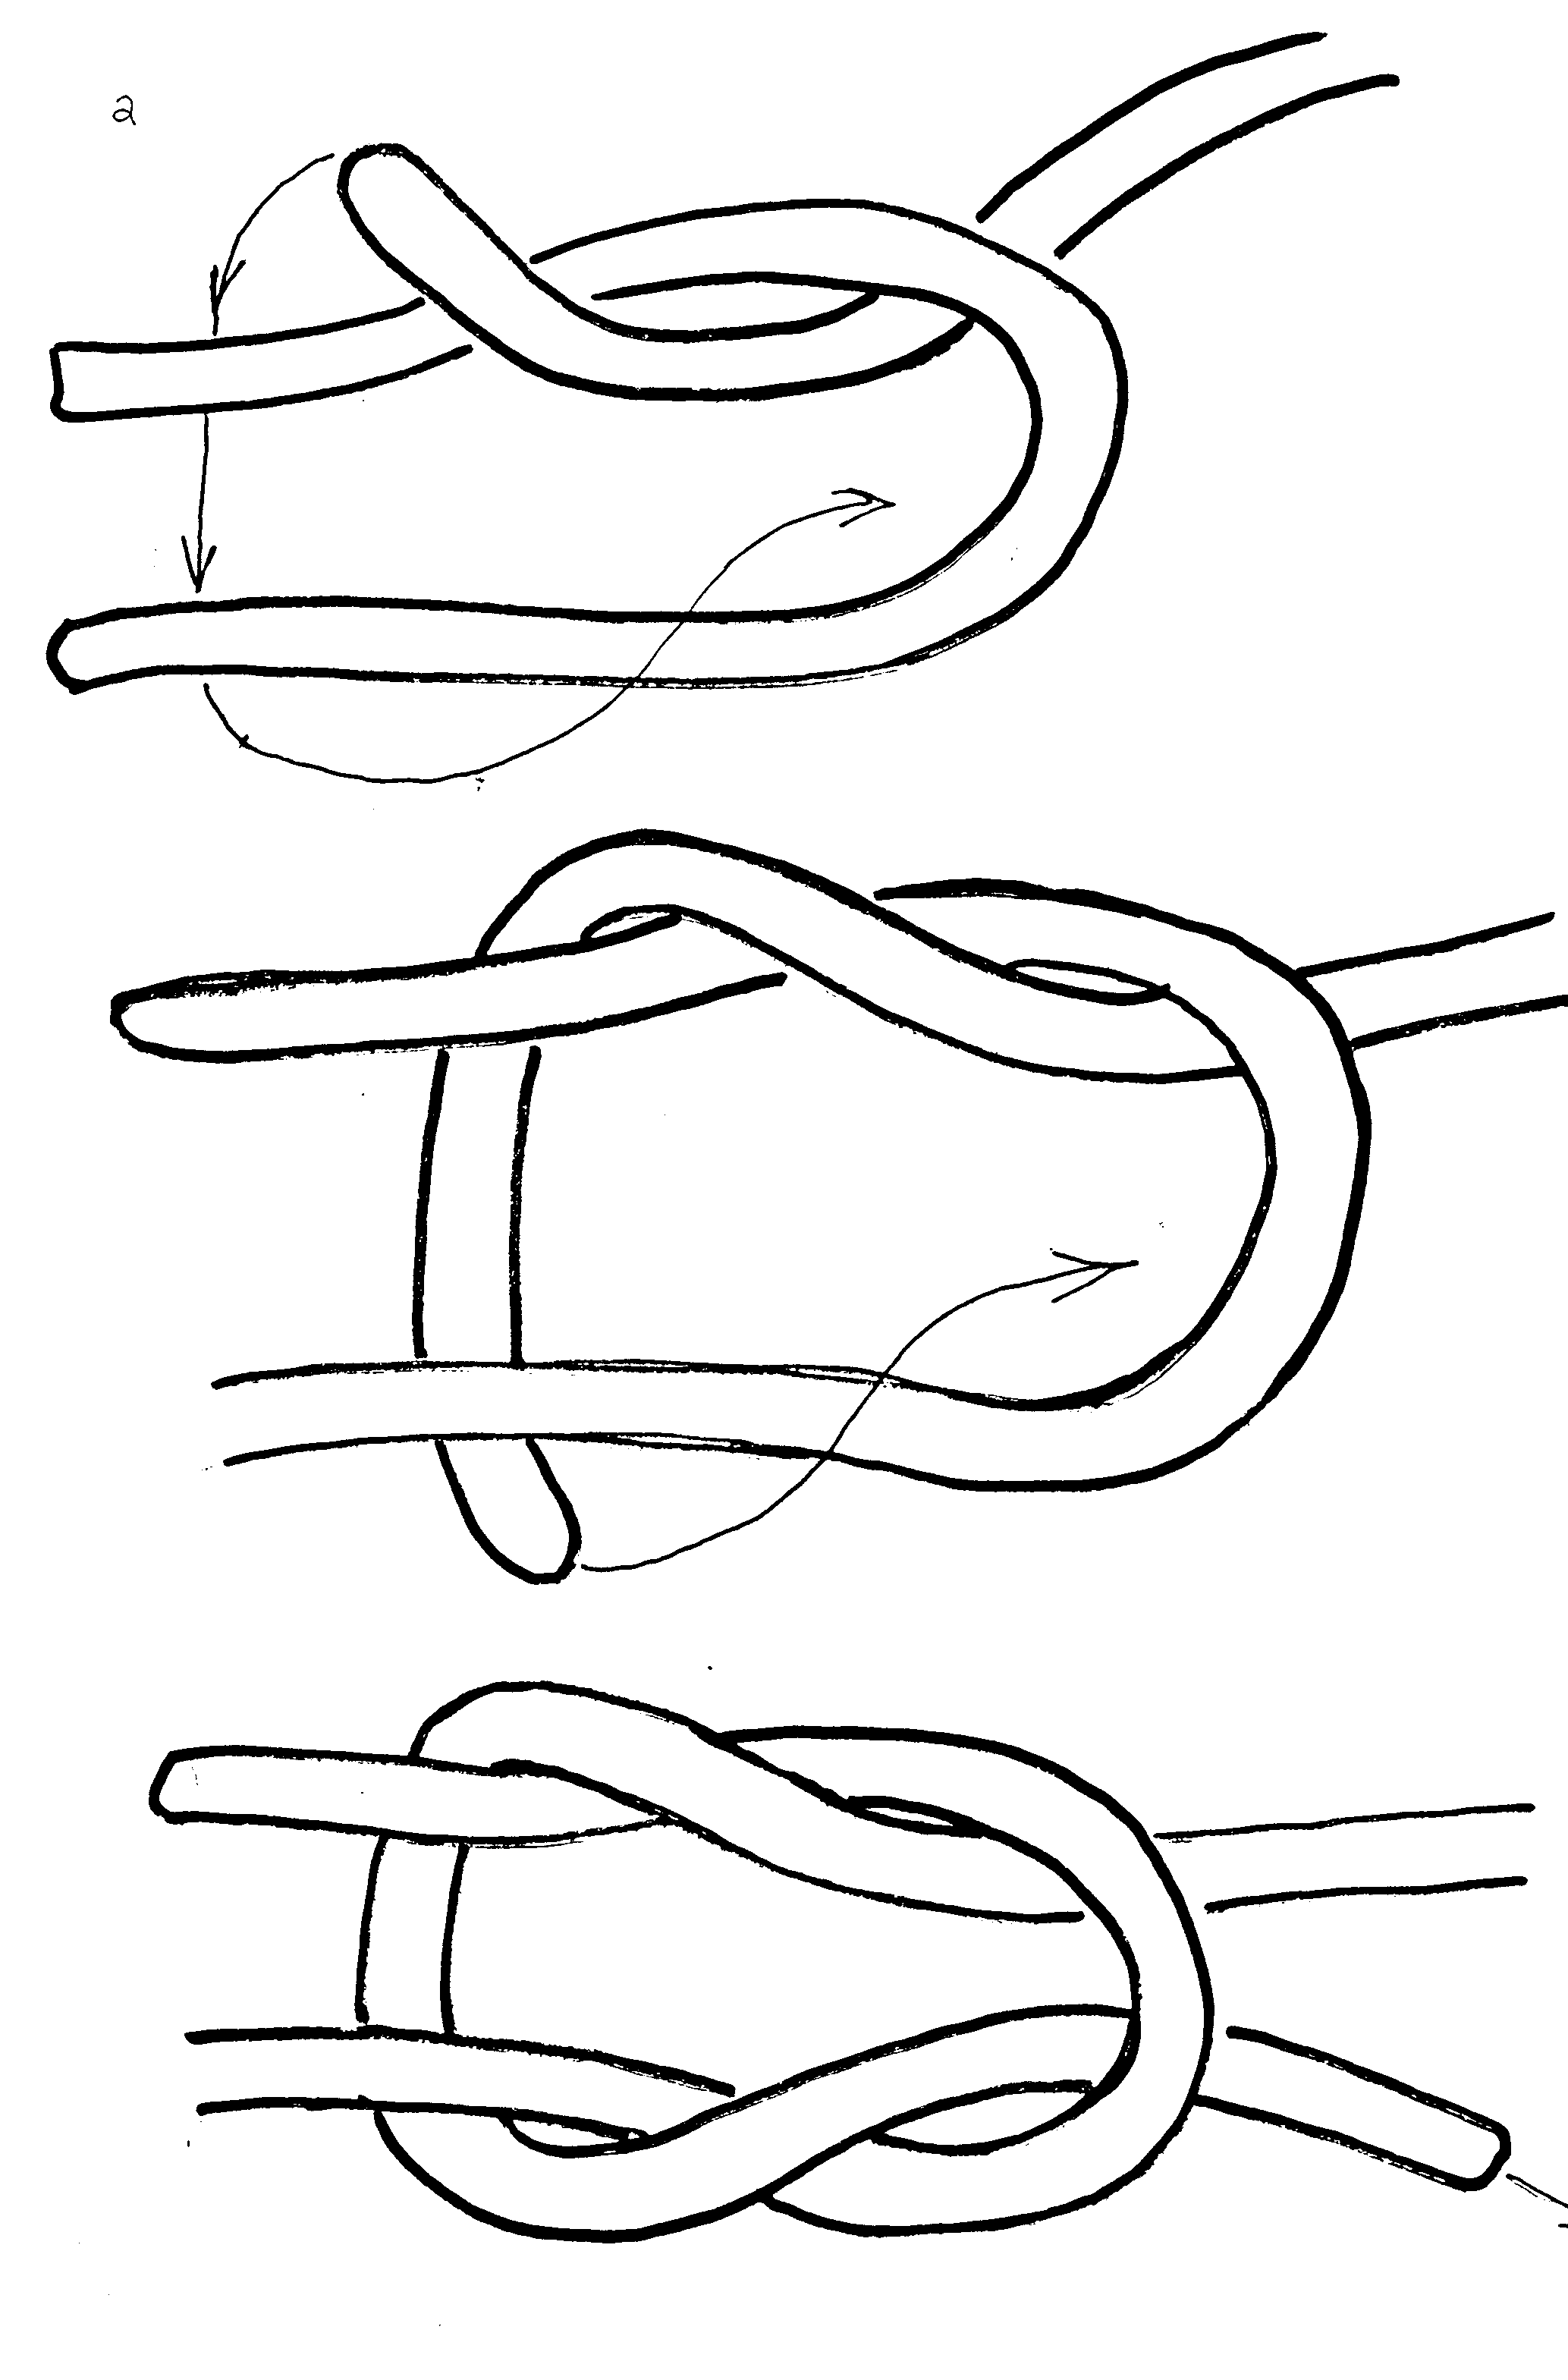 Узел поэтапно. Схема завязывания морского узла. Фламандский узел схема. Как завязывать морской узел схема. Узел восьмерка швартовка.